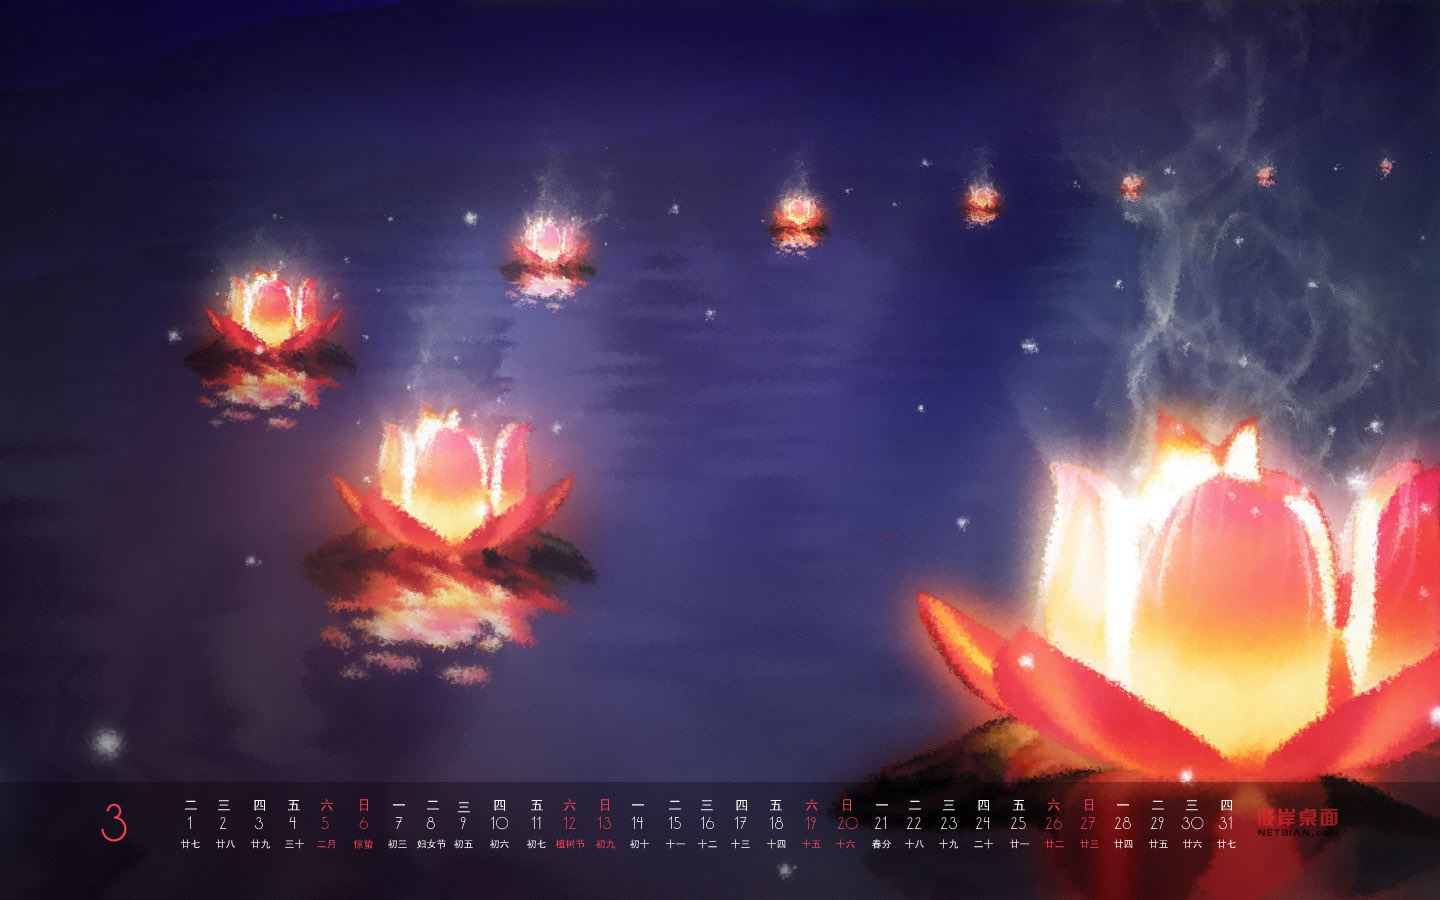 Lotus Pond Moonlight March 2011 Calendar Desktop Wallpaper